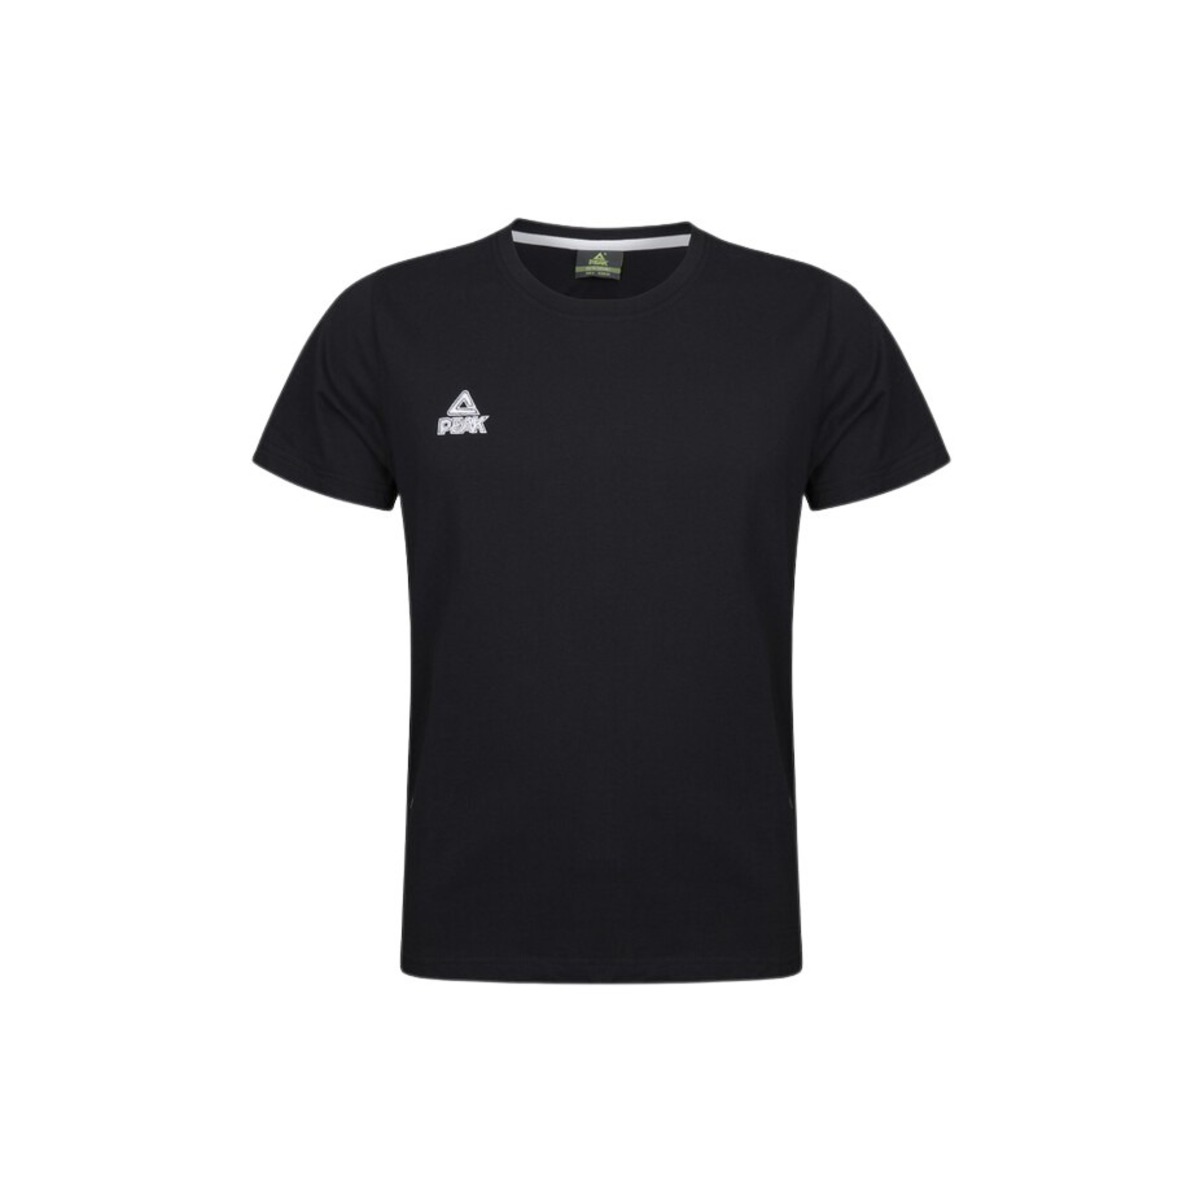 Camiseta Peak Classic - negro - 